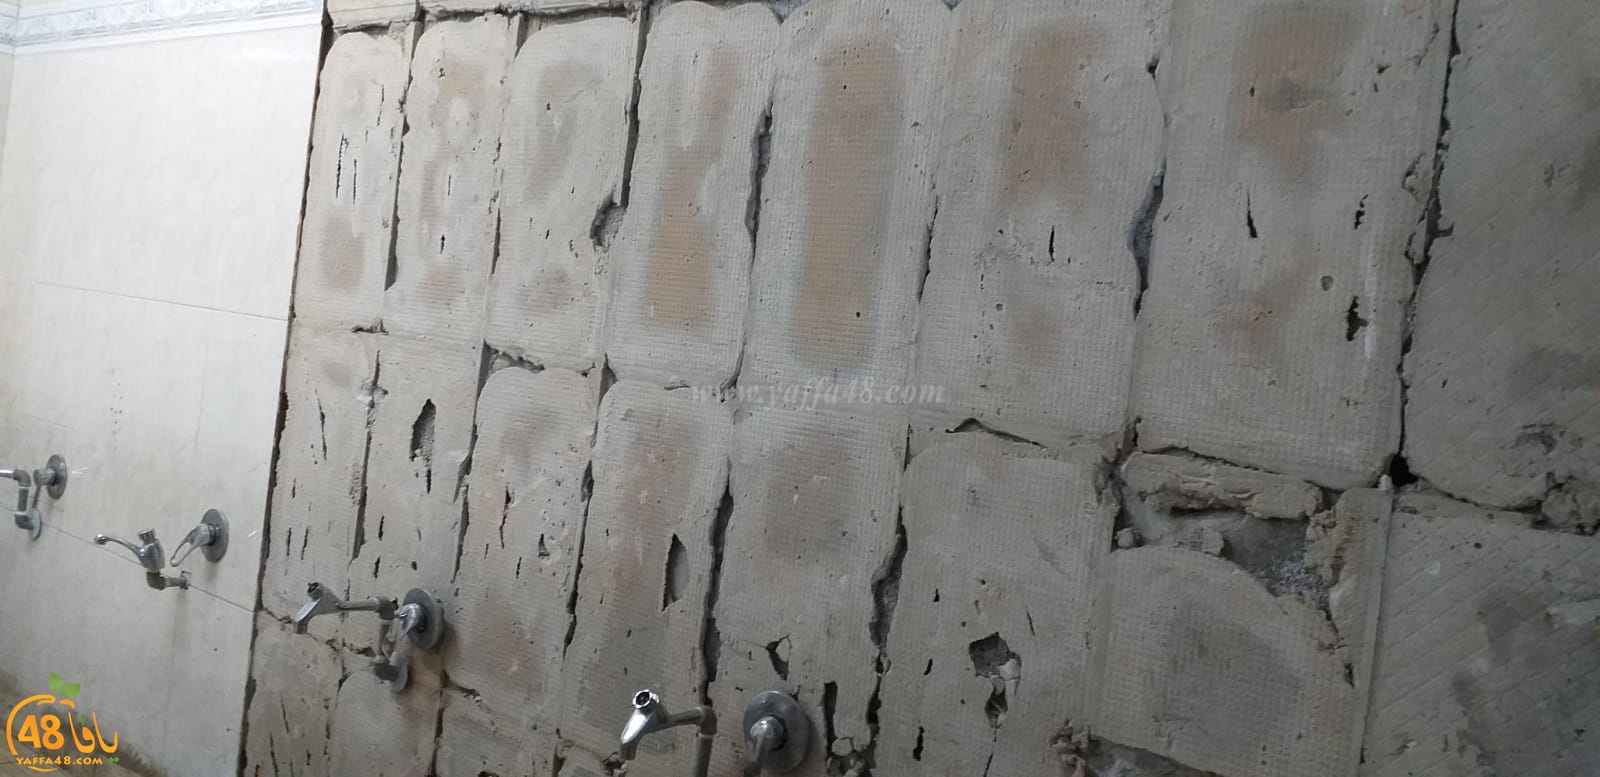 فيديو: البدء بأعمال ترميم مراحيض مسجد الجبلية ودعوات للمساهمة في المشروع 